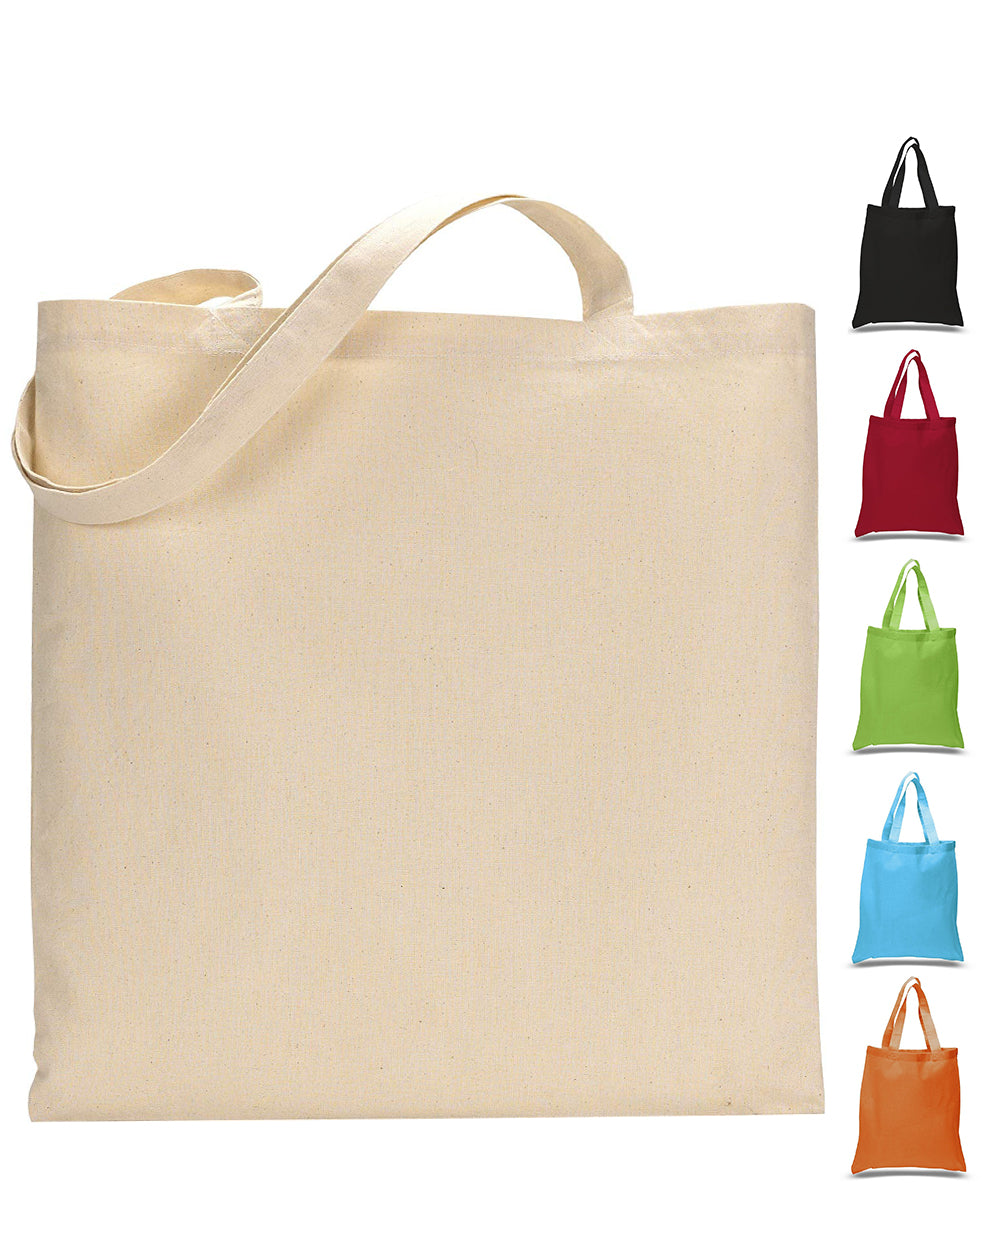 700 rs+ship..eedr New model EKAT BAG 2 pc combo Bag & wallet Cloth material  Good quality | Felt bag, Bags, Tote bag design